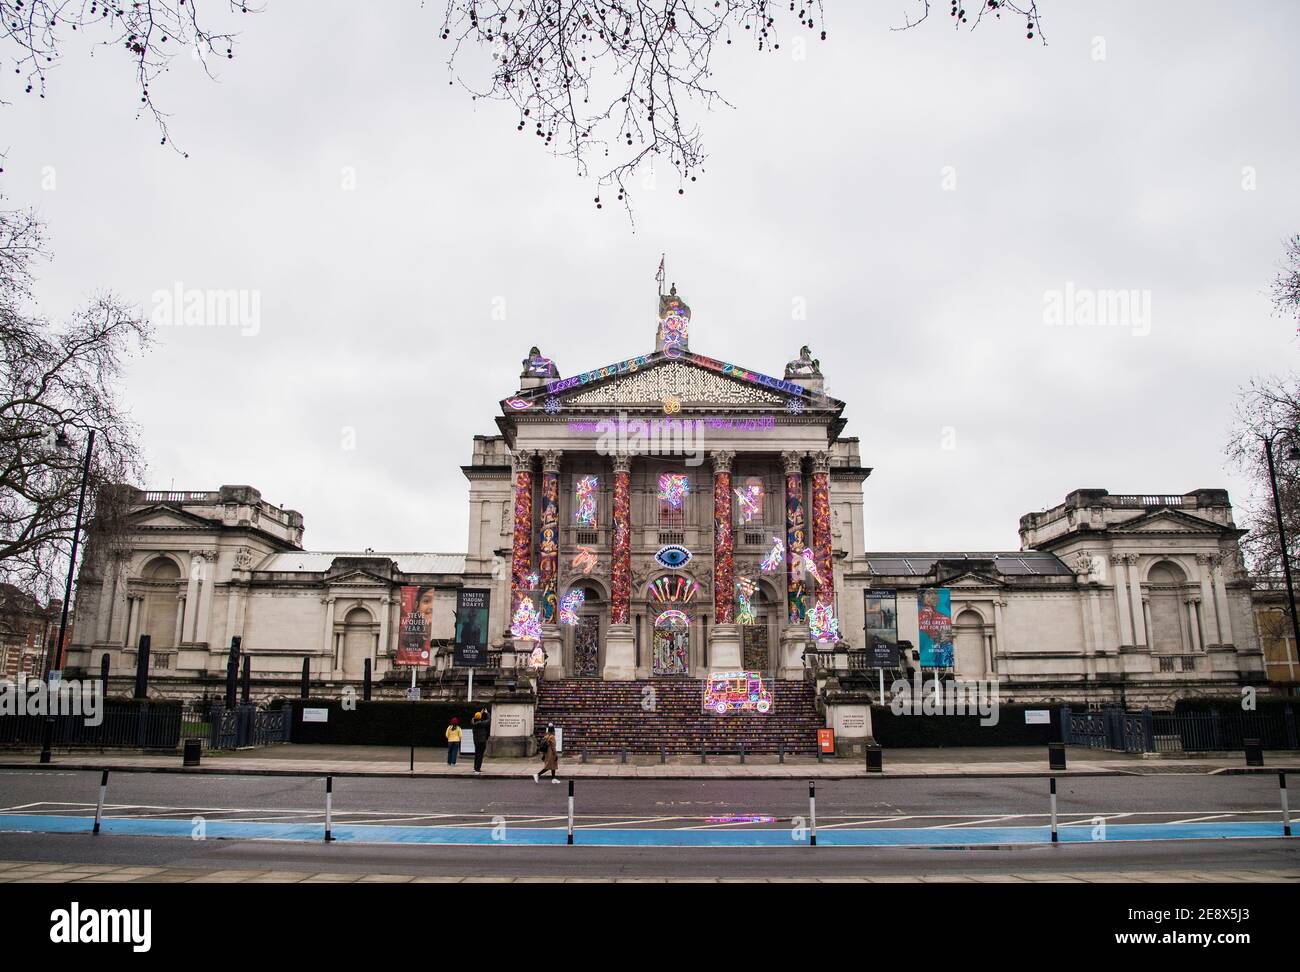 "Recordando un mundo feliz" por Chila Kumari Singh Burman, fuera de Tate Britain en Londres durante el tercer cierre nacional de Inglaterra para frenar la propagación del coronavirus. Fecha del cuadro: Lunes 1 de febrero de 2021. Foto de stock